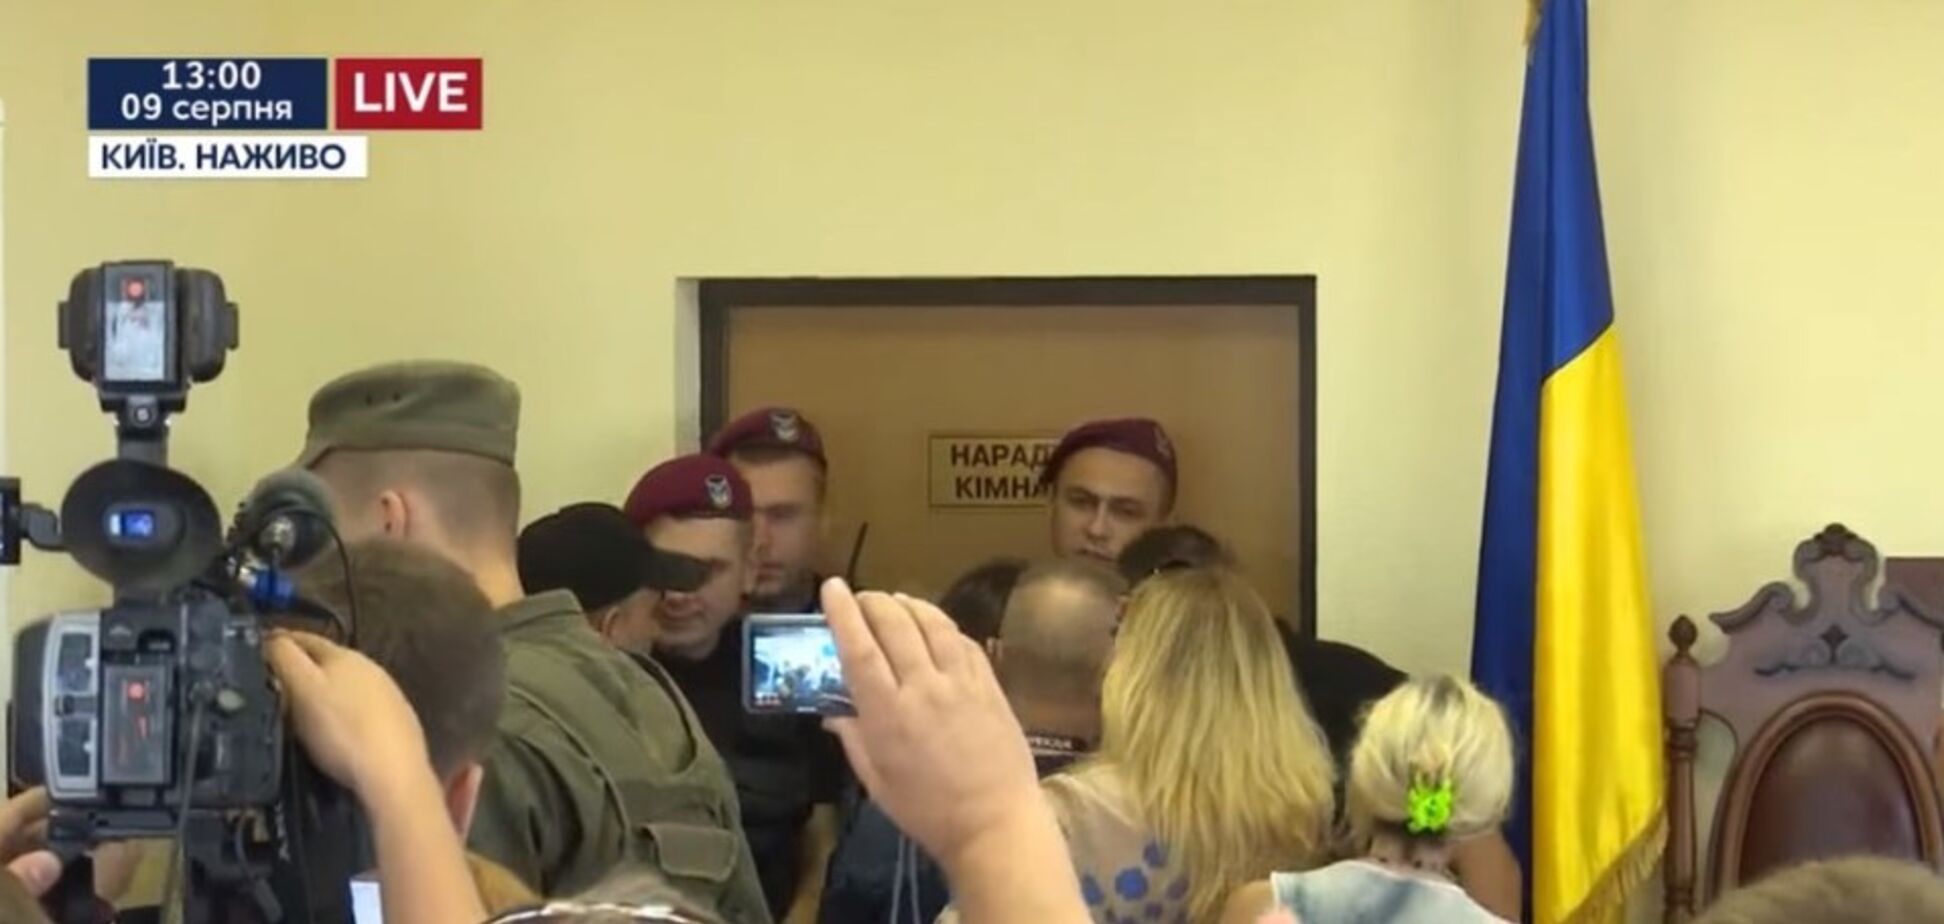 'Скотыняка!' В суде над Савченко произошли стычки. Видеофакт